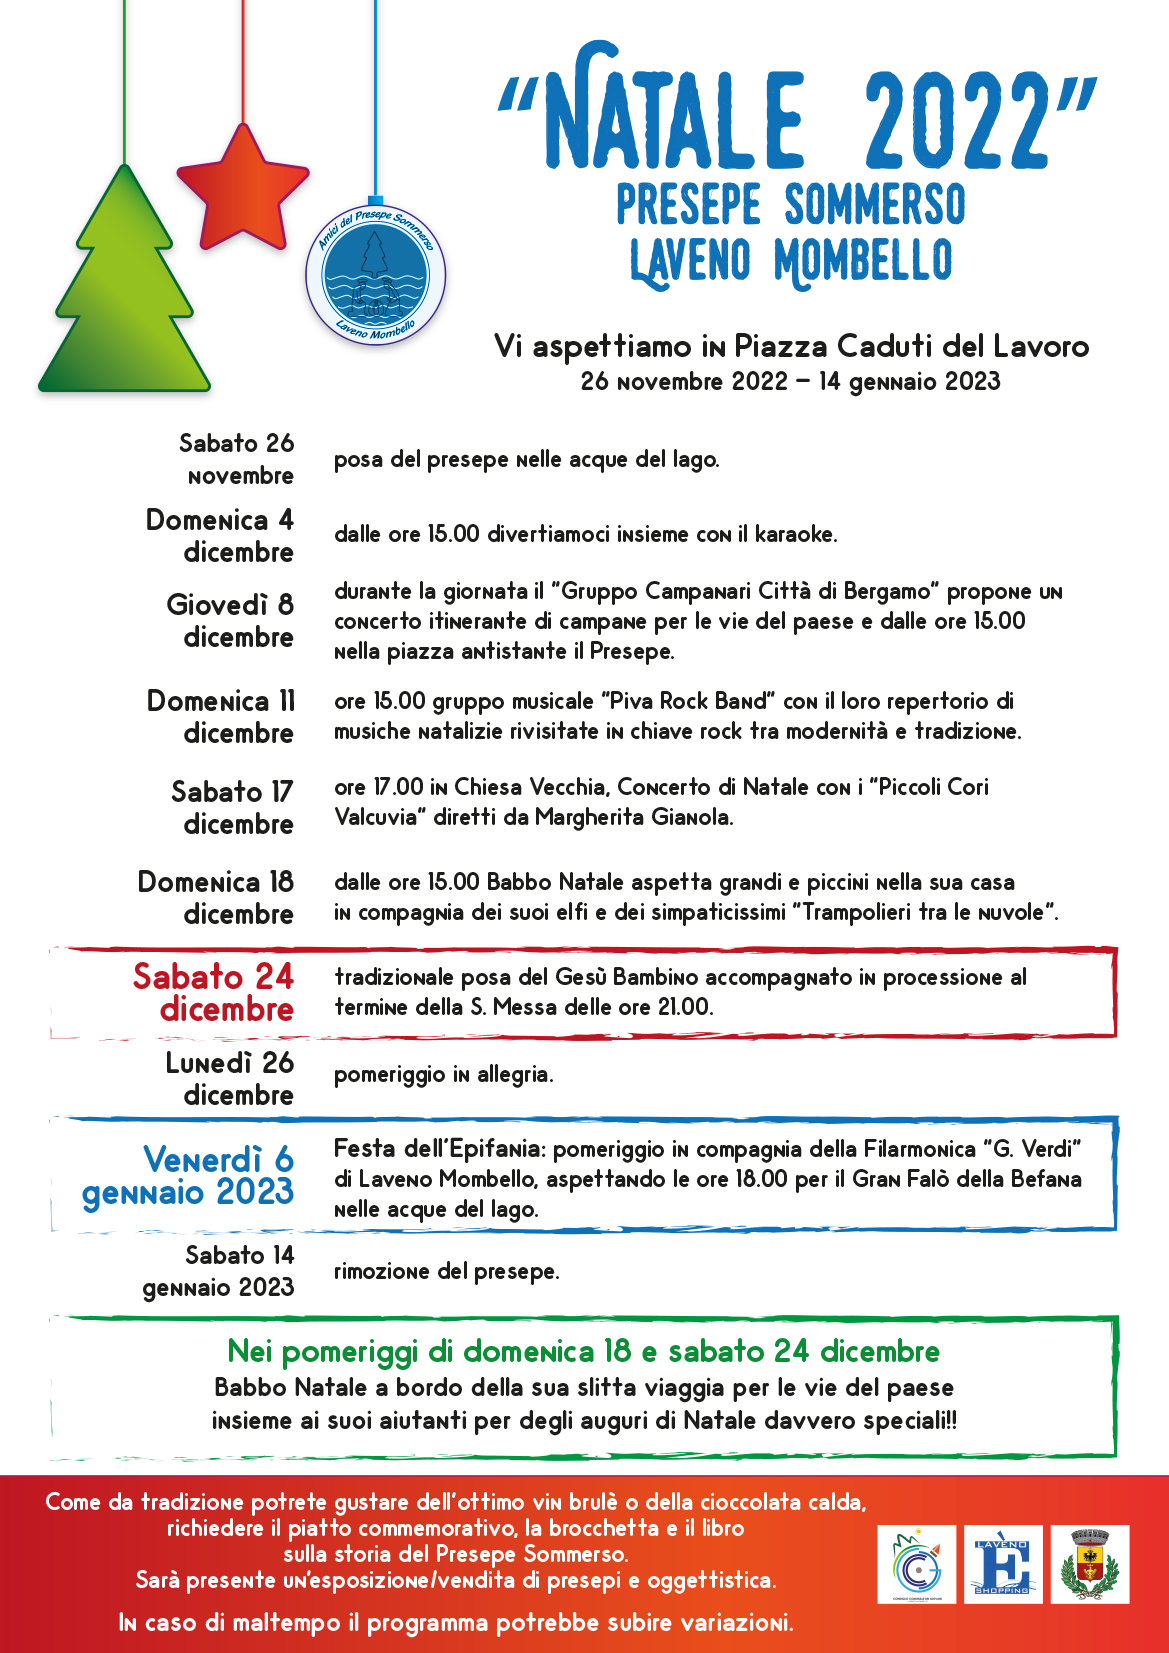 Programma ufficiale Presepe Sommerso Laveno Mombello Natale 2022